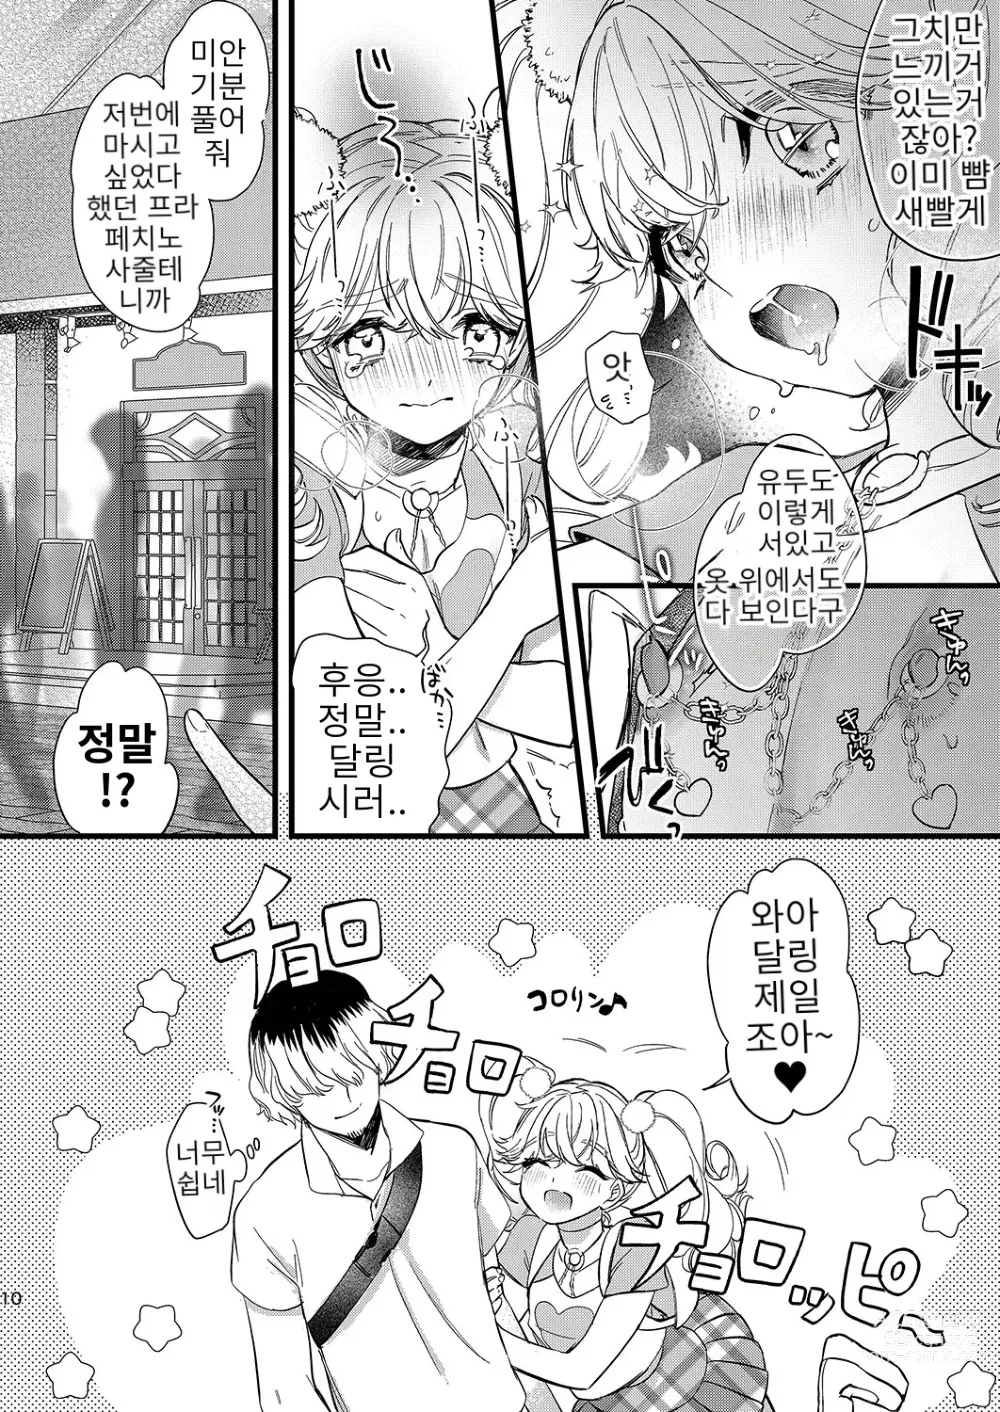 Page 10 of doujinshi 안쥬랑 두근두근 엣찌한 데이트 하자구